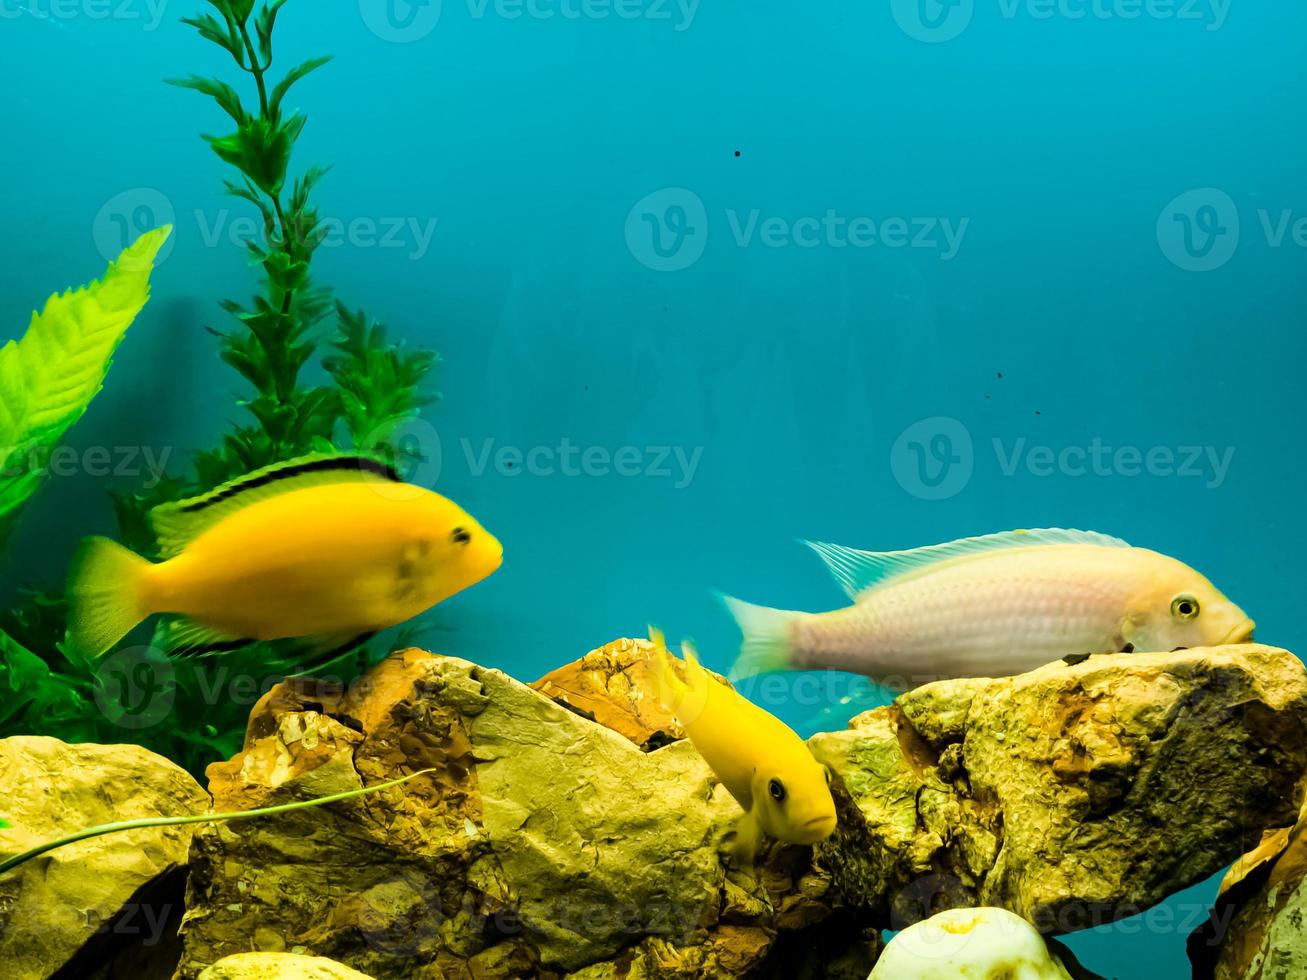 veelkleurig helder vis zwemmen in de aquarium. aquarium met klein huisdieren. foto